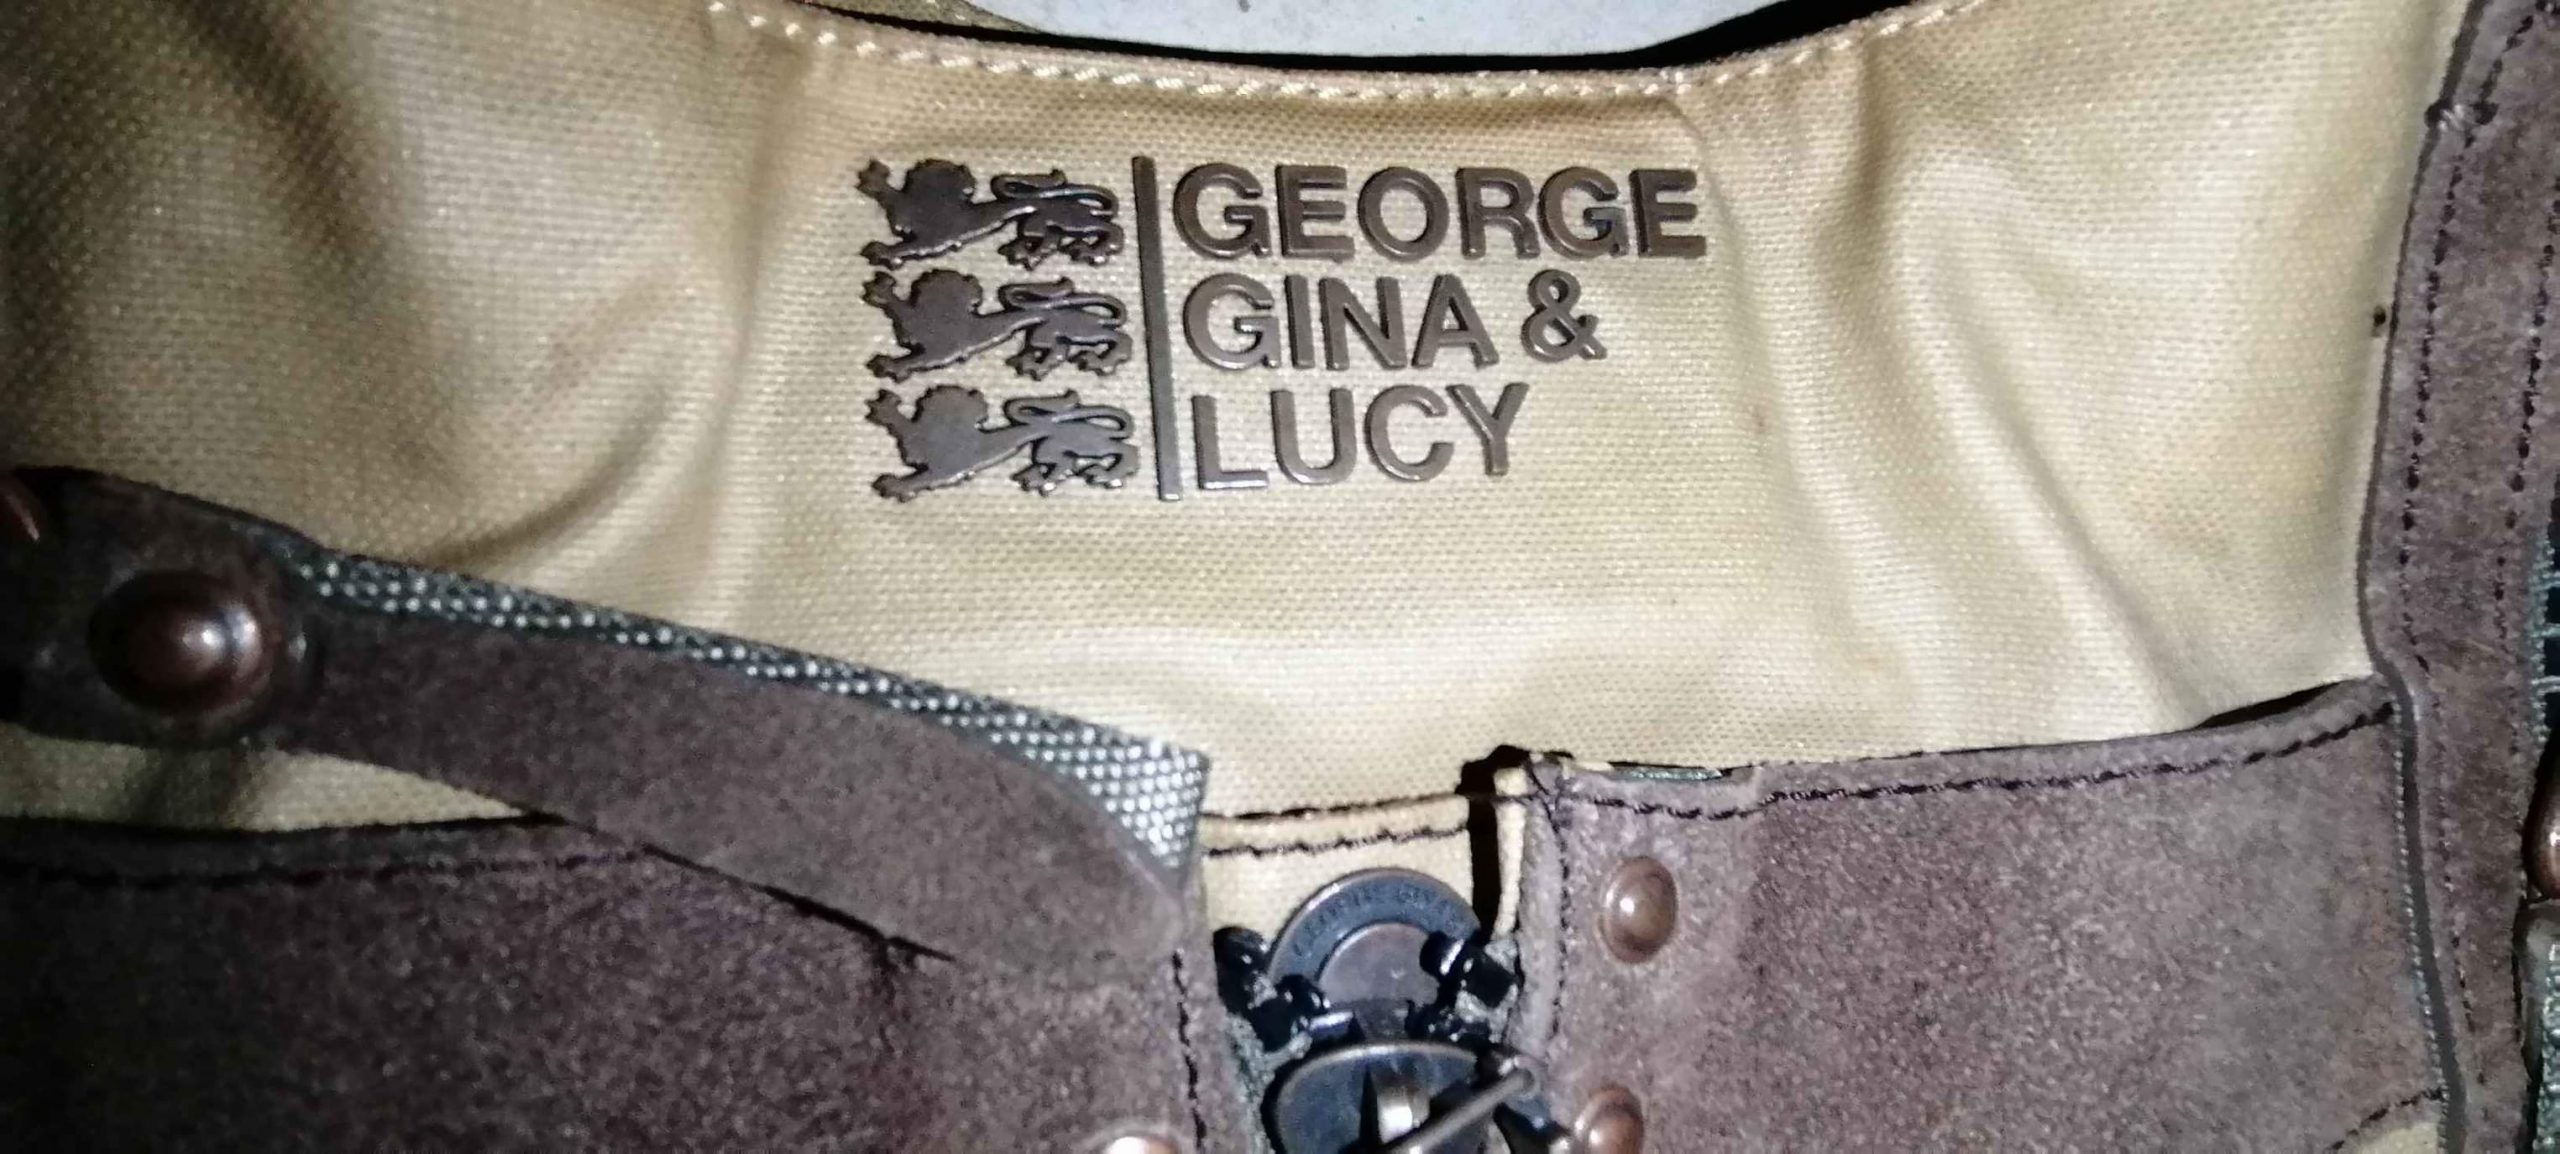 Vendo cartera marca George Gina & luky origina estado 10de 10